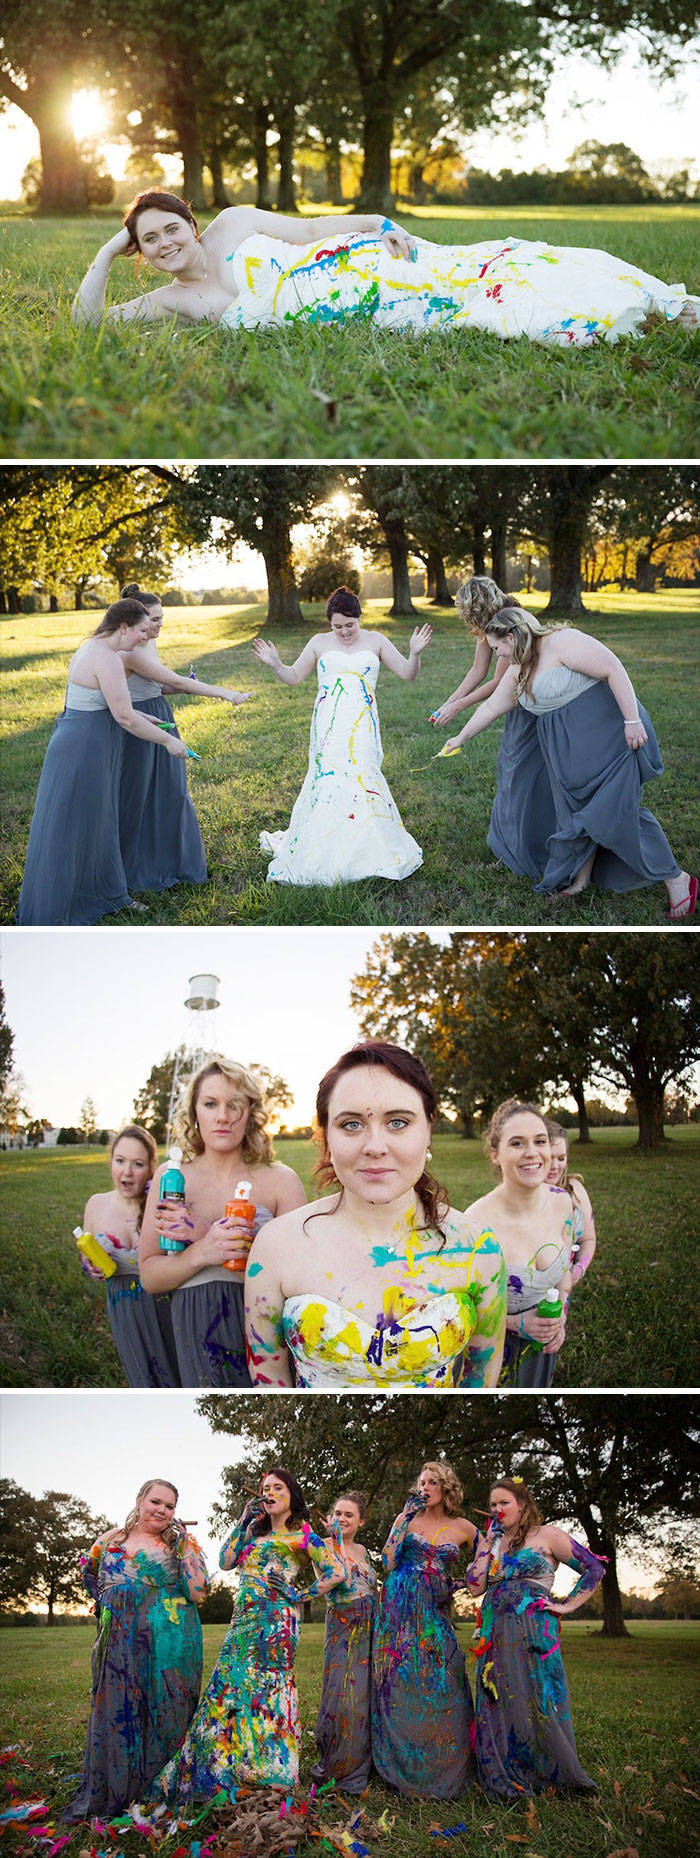 These Weddings Look Like Fun!